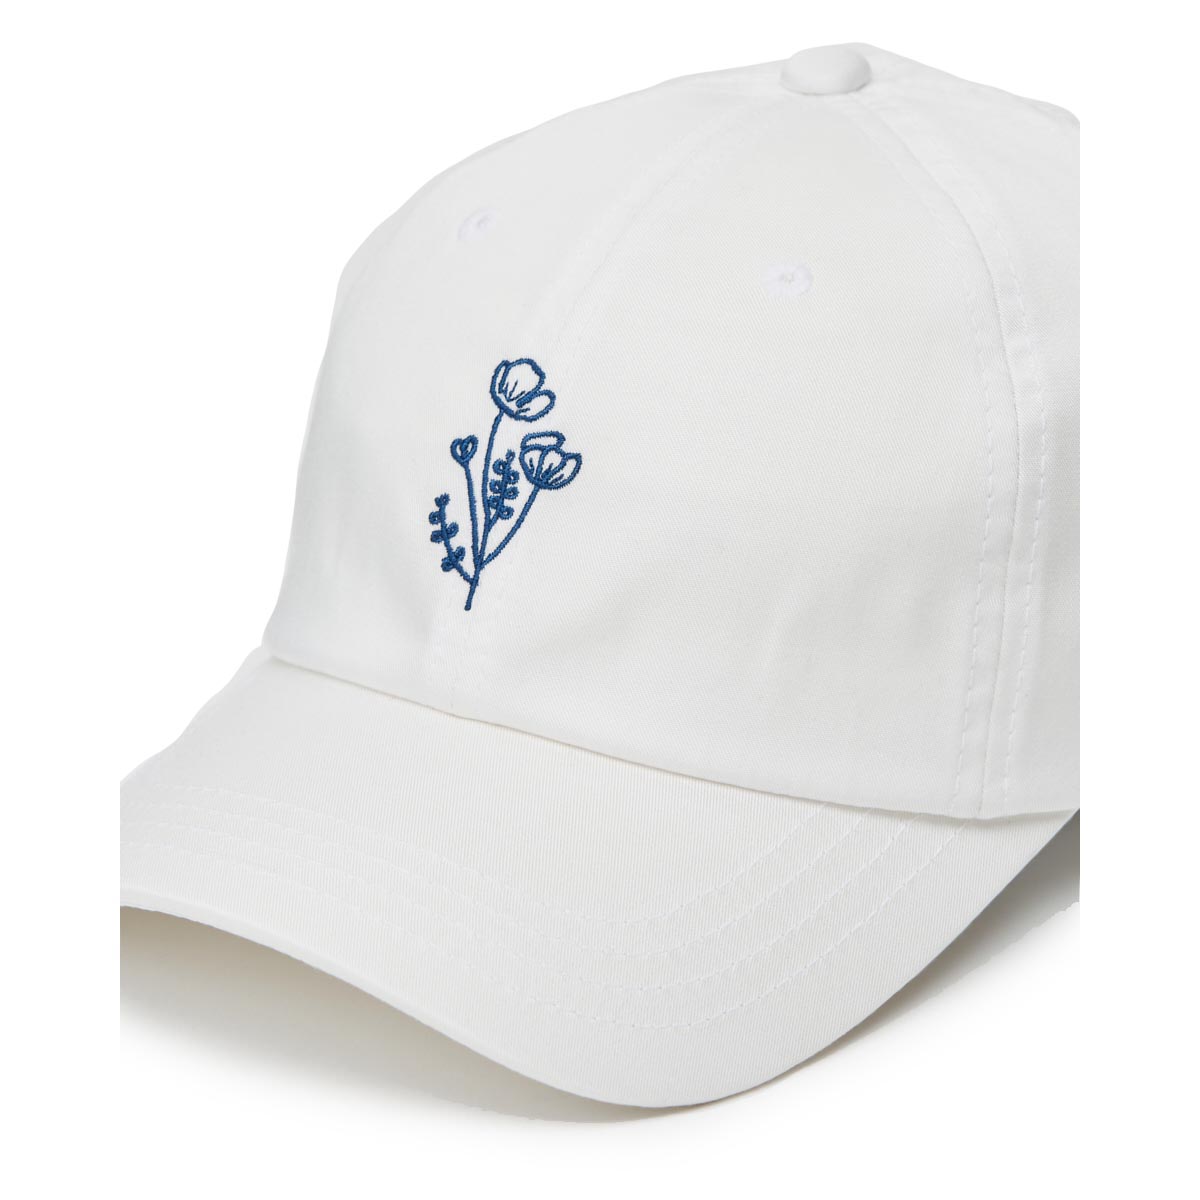 Tentree Women's Flower Embroidery Peak Hat